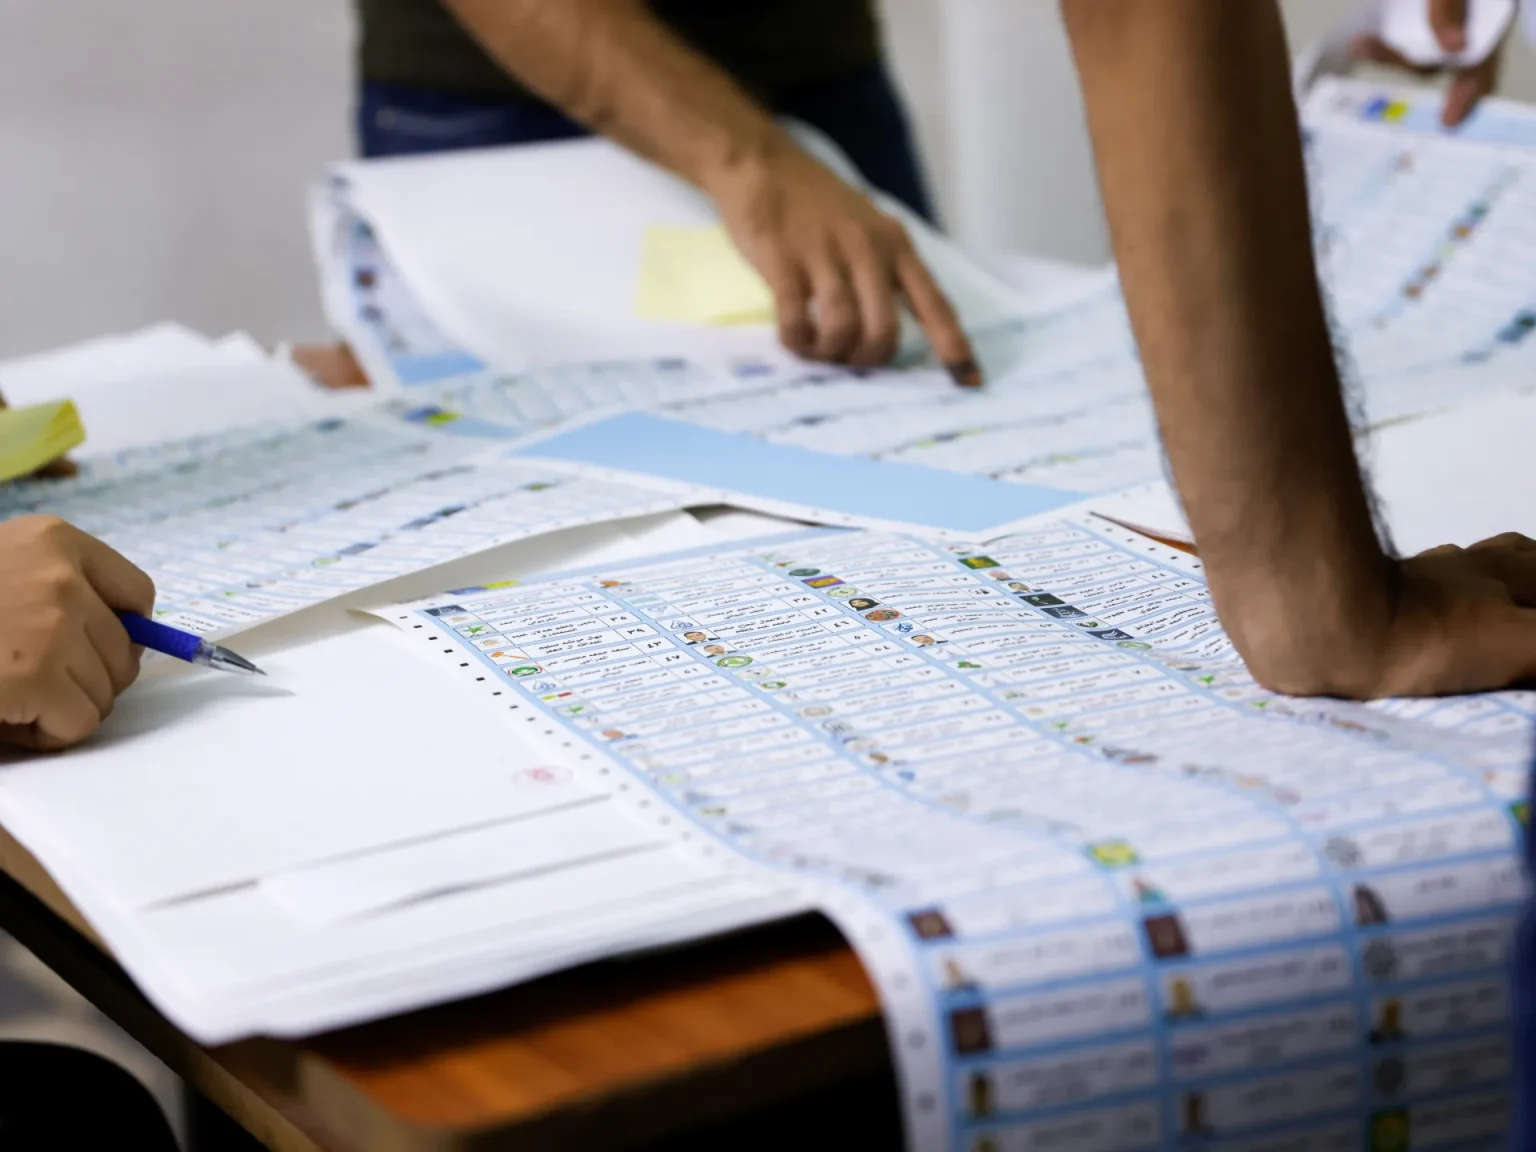 مفوضية الانتخابات: عدد الطعون المستلمة اليوم الجمعة بلغ 14 طعناً